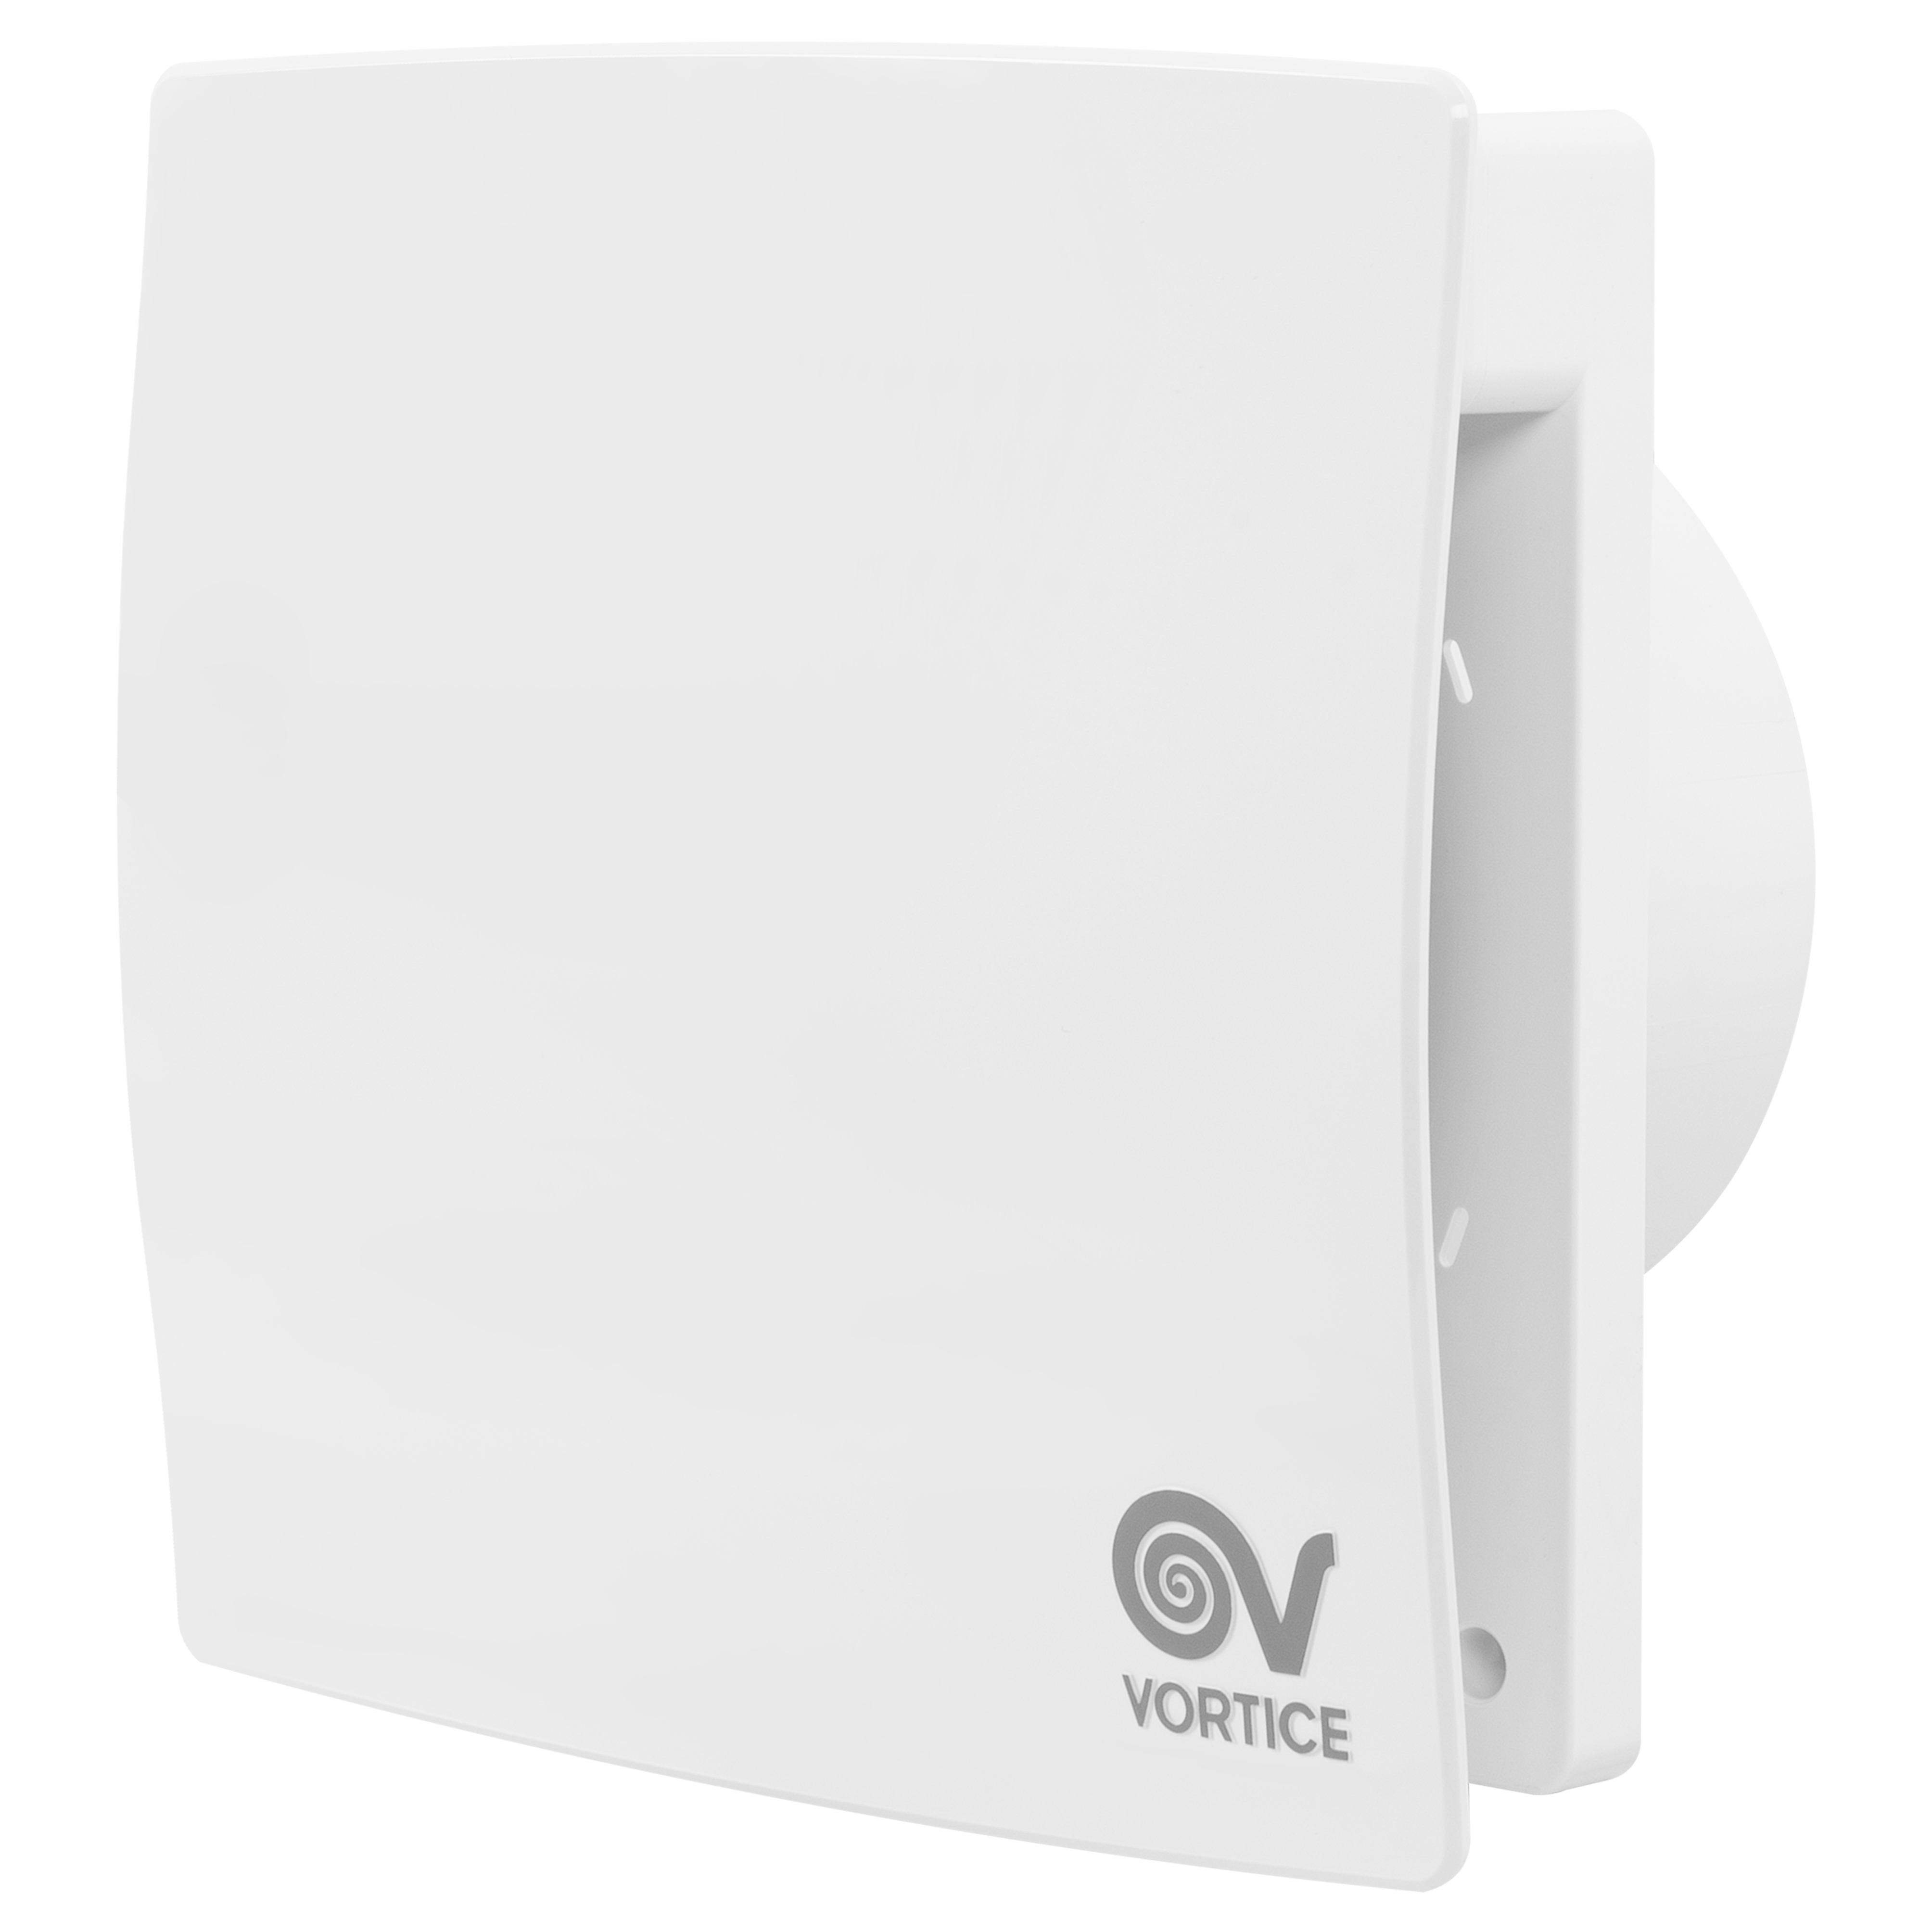 Купить вентилятор vortice на подшипниках Vortice MEX 120/5" LL 1S в Киеве